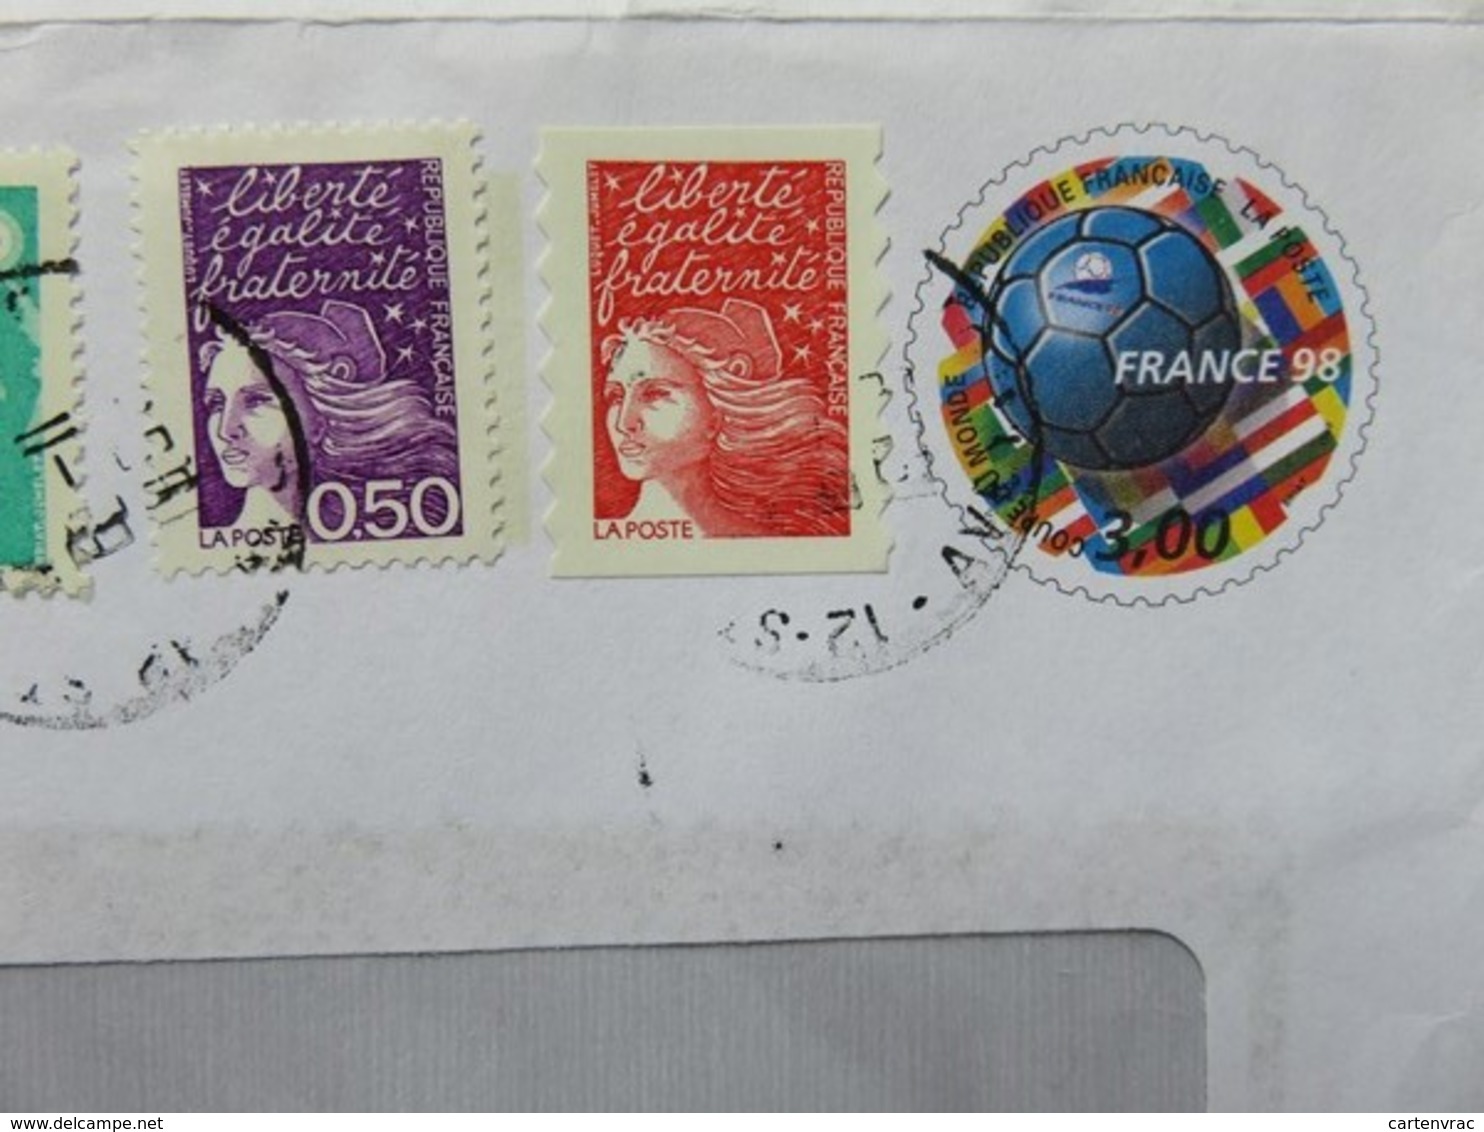 PAP - Entier Postal - Ballon De Briat France 98 - Ets Zuliani - St Affrique - Cachet à Date 06.11.1998 - Footix - Prêts-à-poster:  Autres (1995-...)